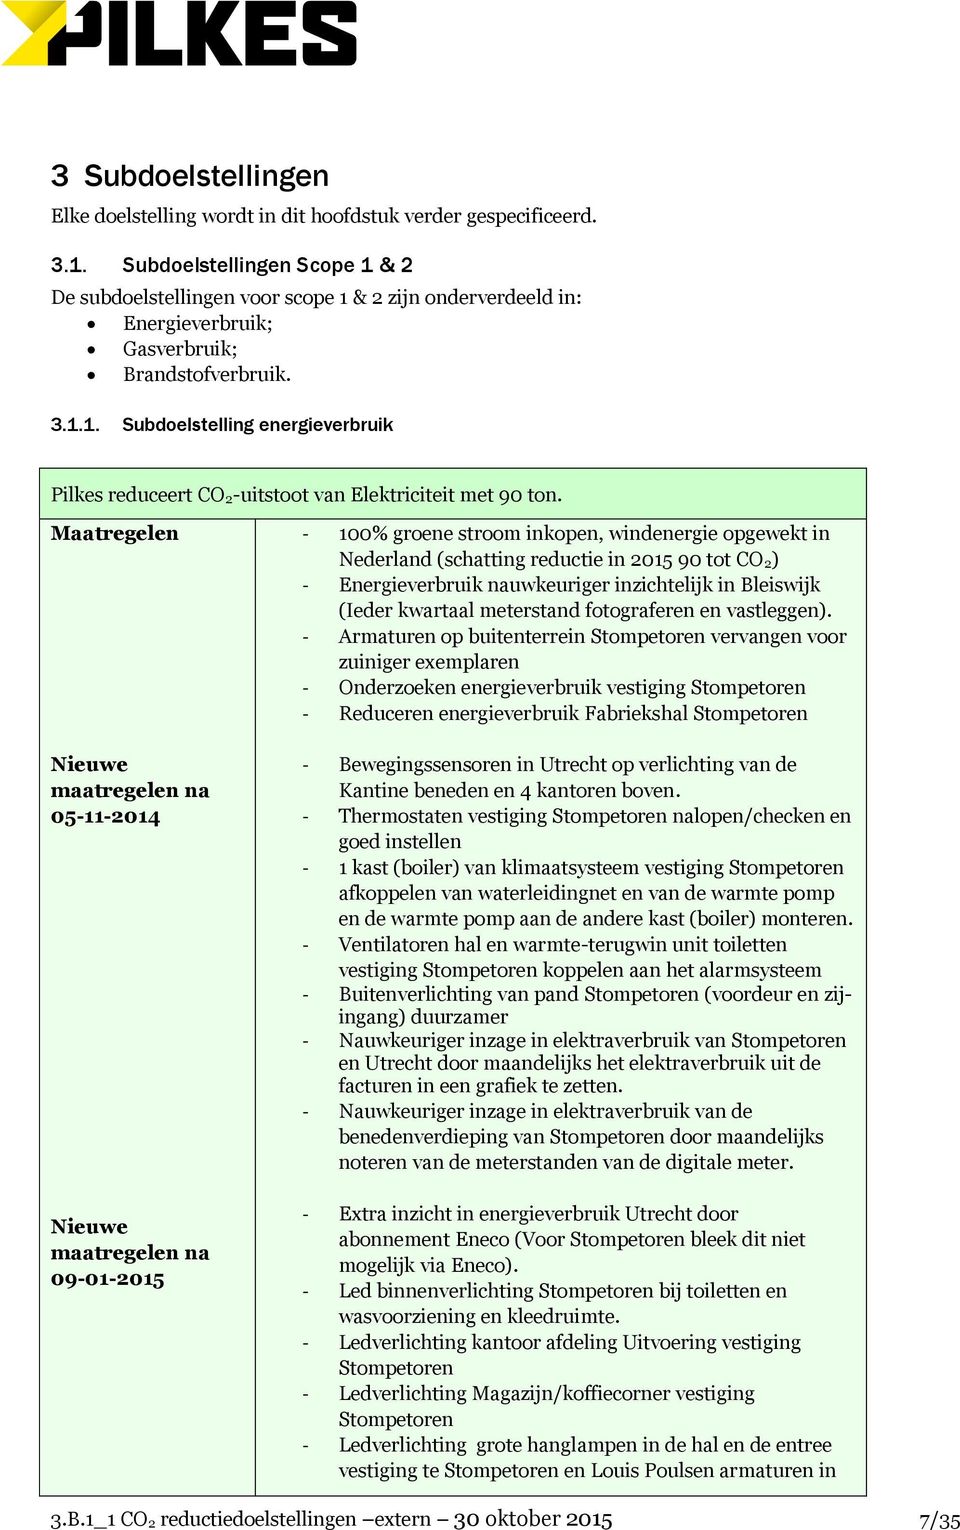 Maatregelen Nieuwe maatregelen na 05-11-2014 Nieuwe maatregelen na 09-01-2015-100% groene stroom inkopen, windenergie opgewekt in Nederland (schatting reductie in 2015 90 tot CO 2) - Energieverbruik